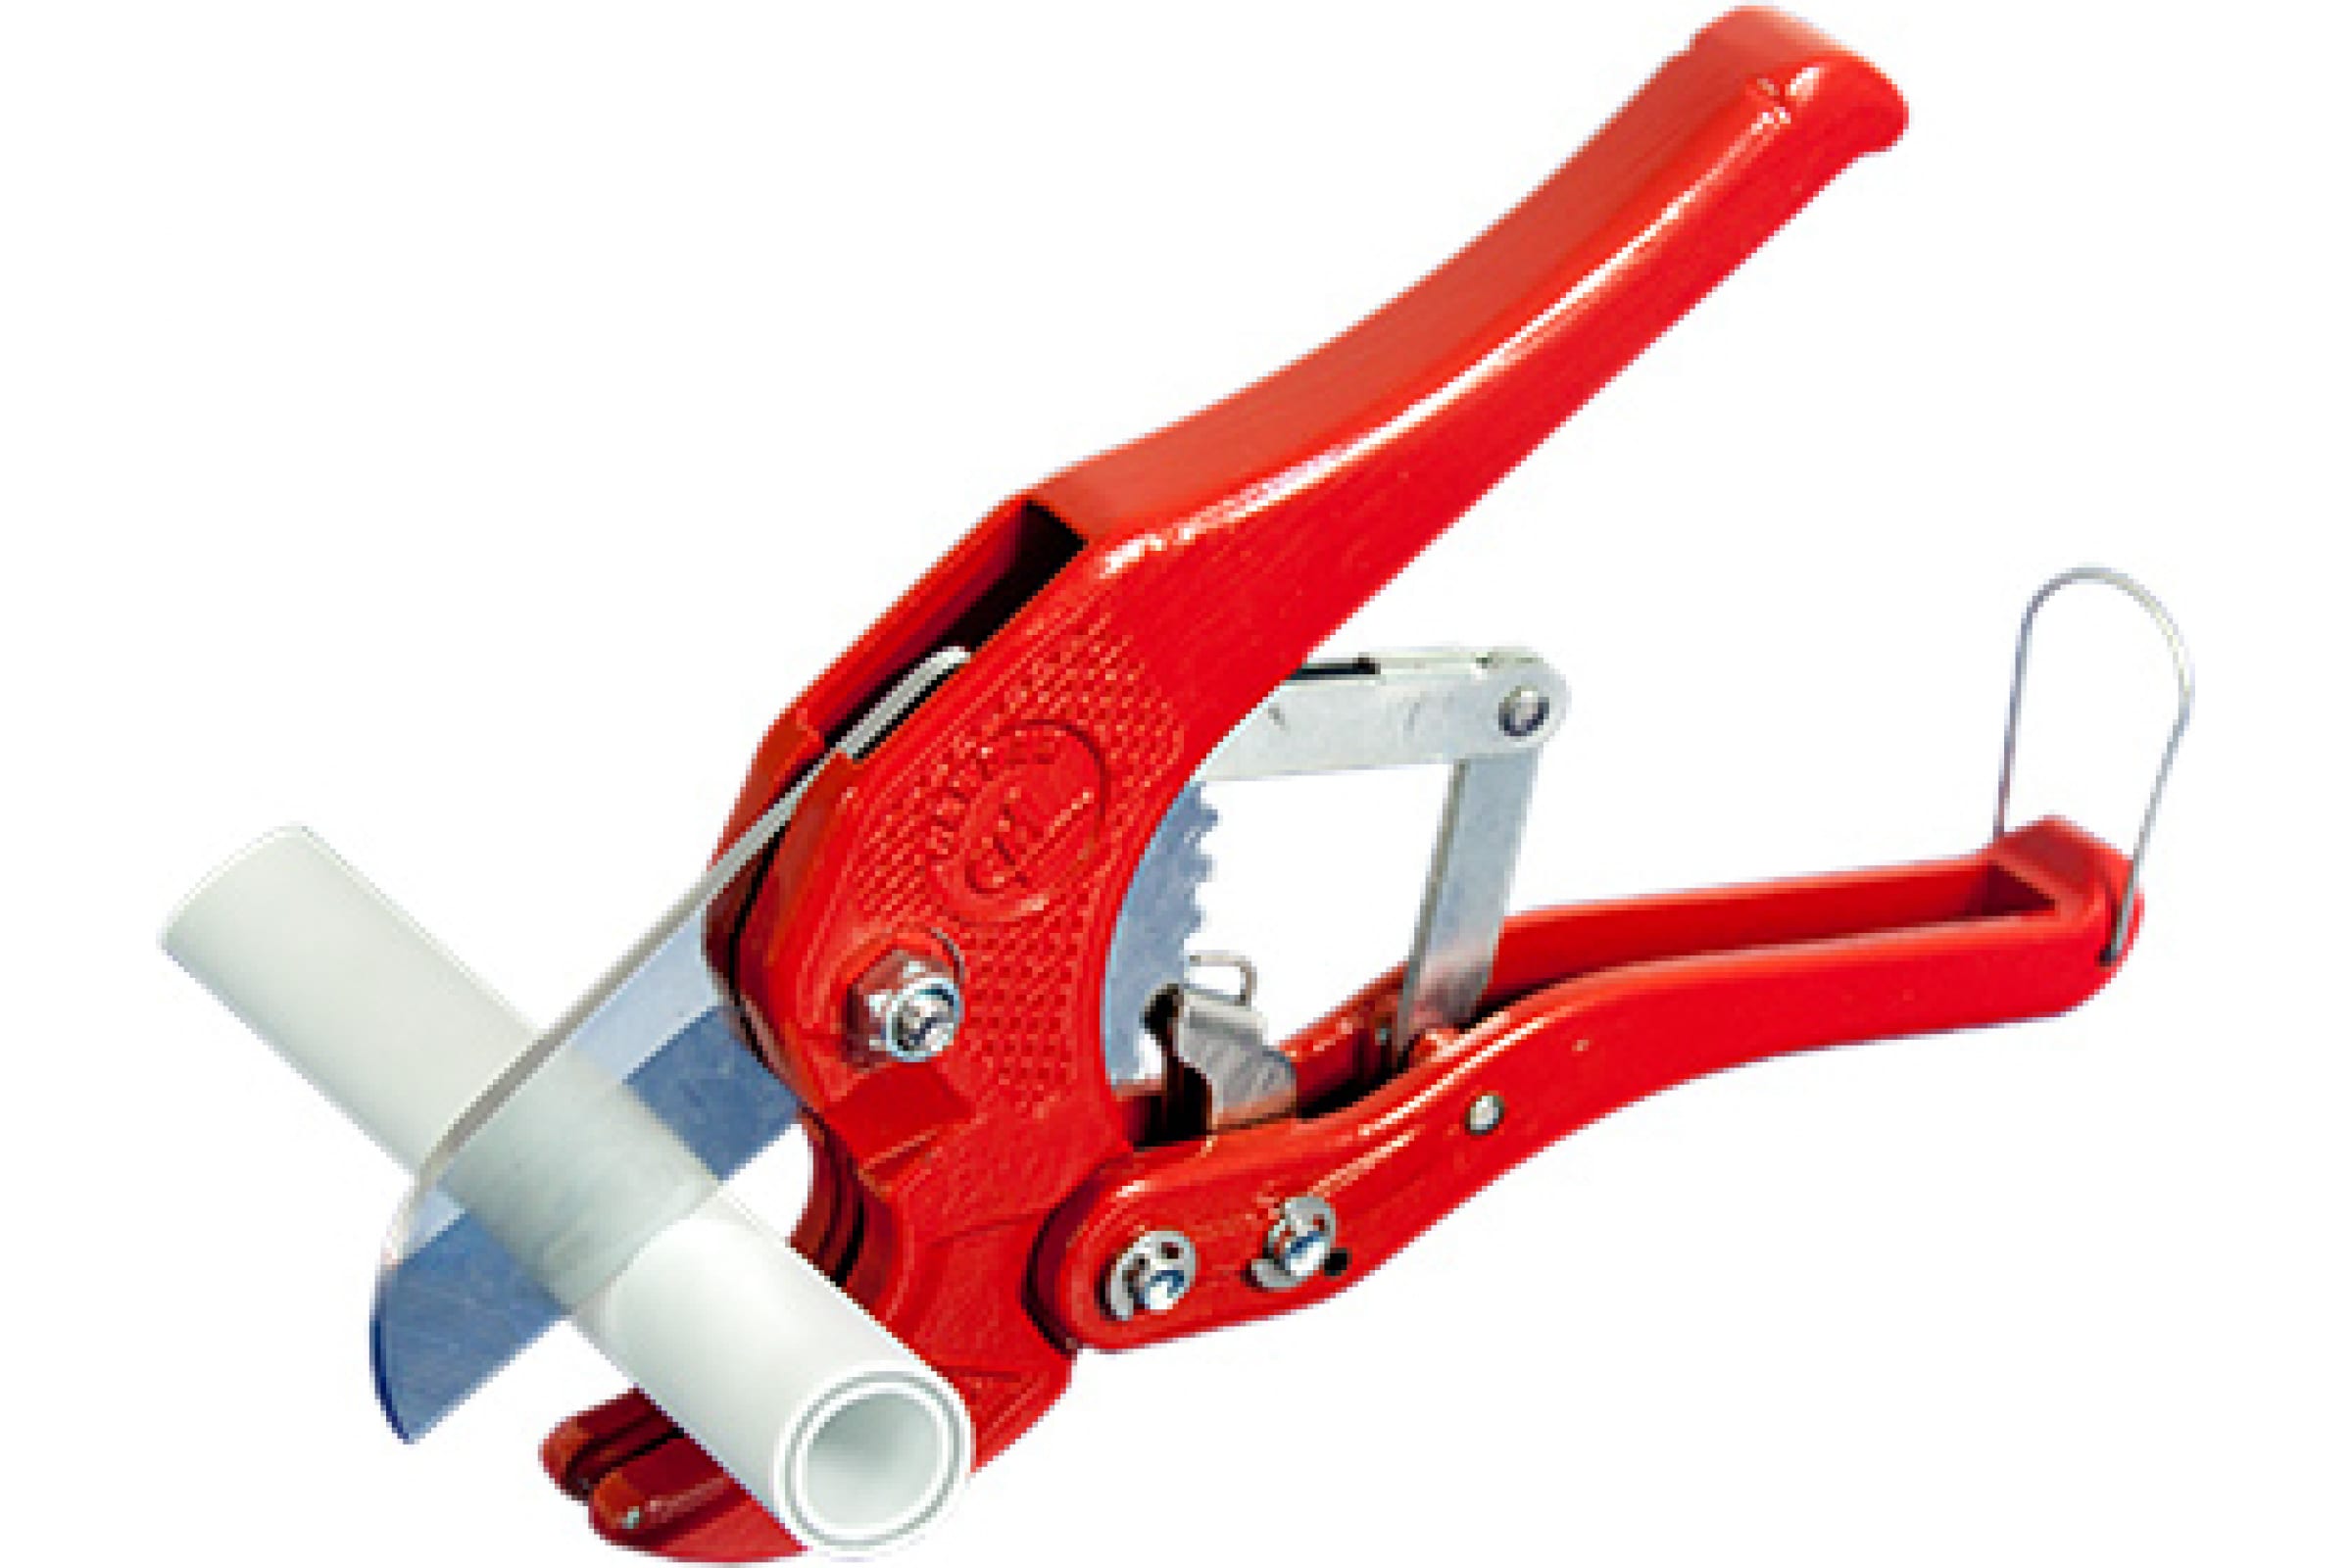 Ножницы RTP резак Candan для труб из PP R D до 42 мм 14469 ножницы для резки пластиковых труб до 42мм rotorica